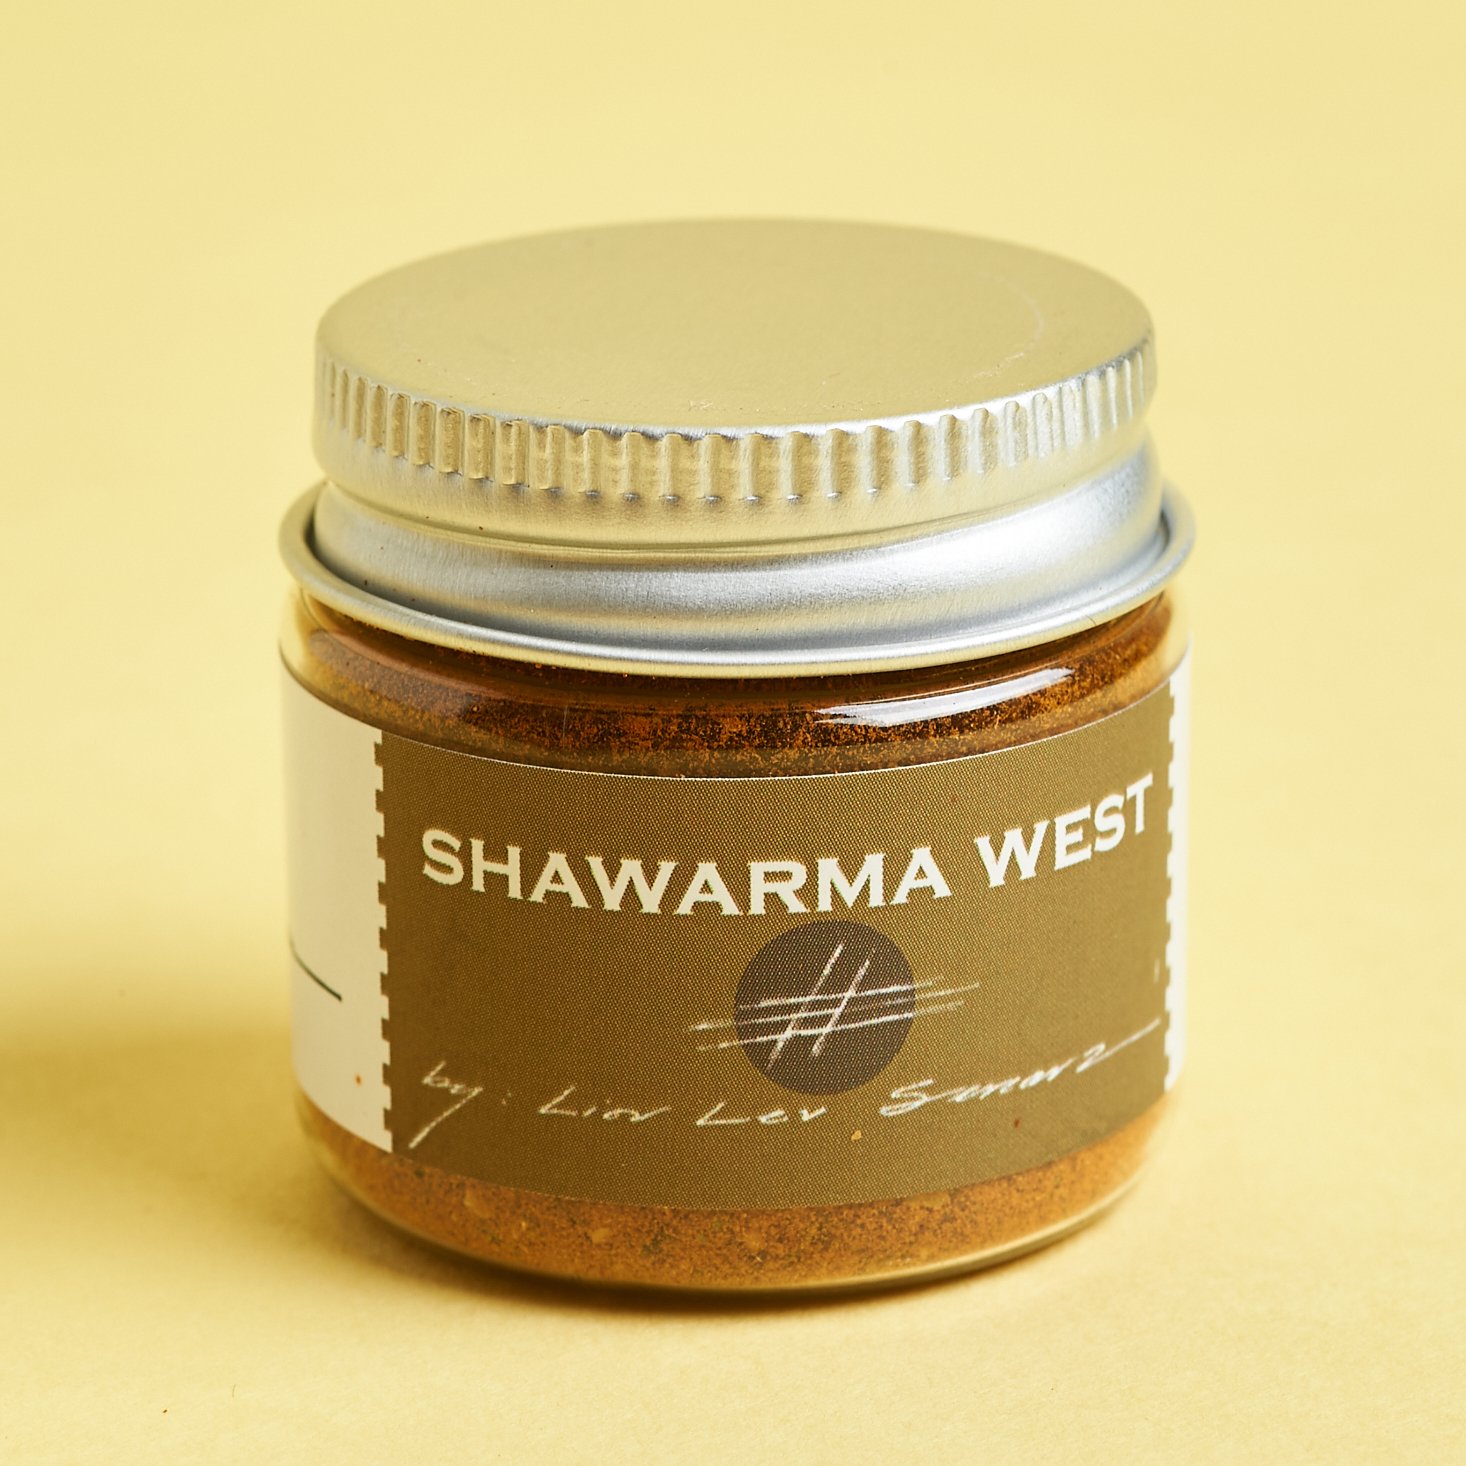 A small jar of Schwarma Spice by La Boite.